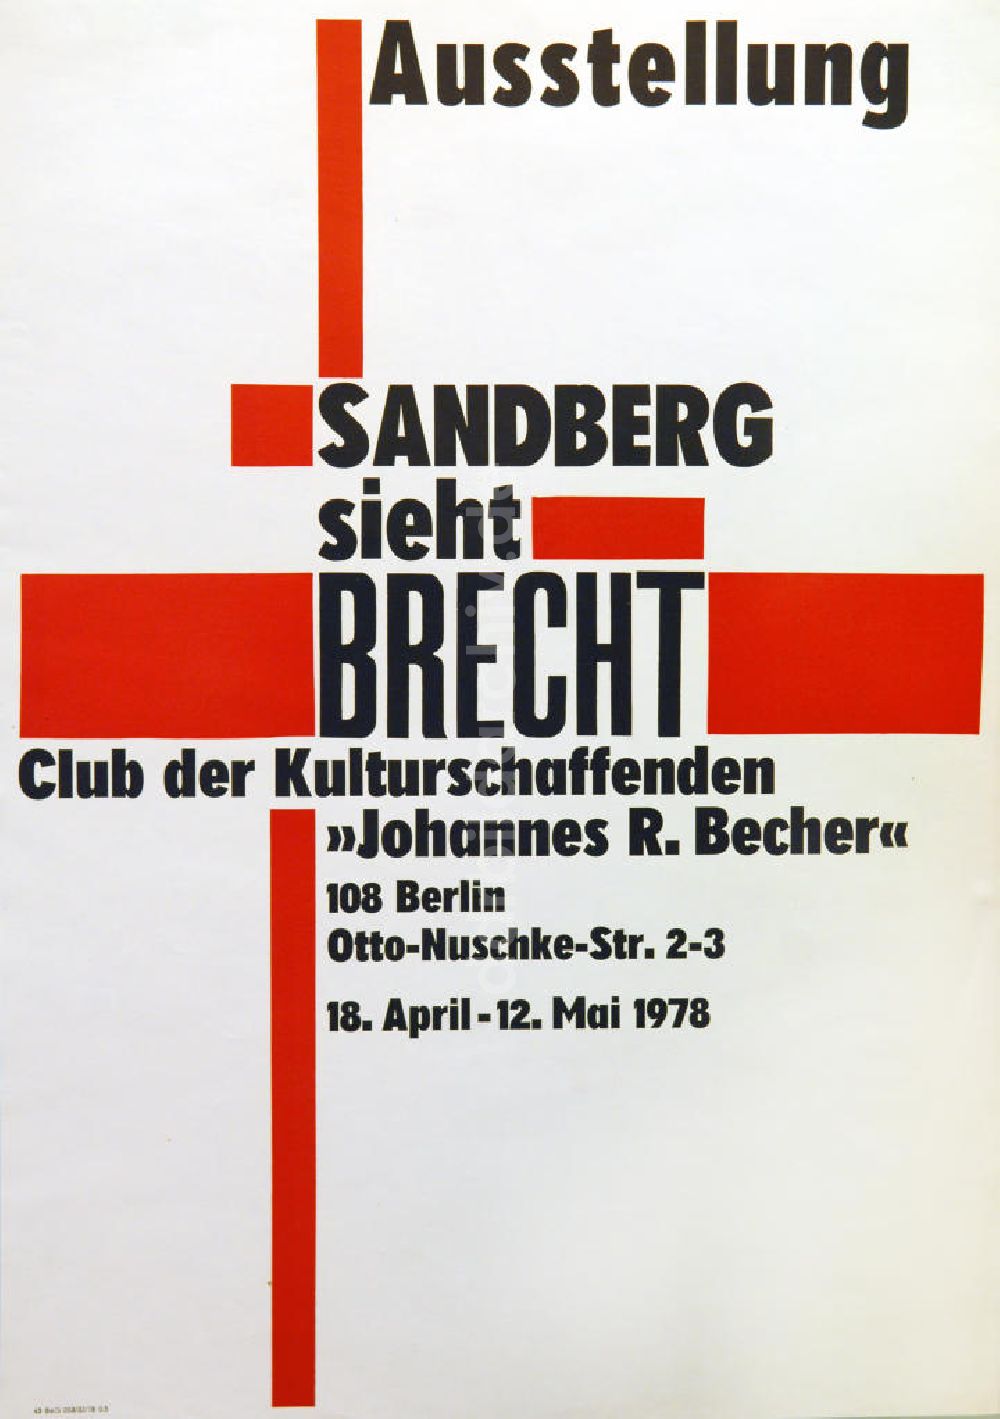 DDR-Bildarchiv: Berlin - Plakat von der Ausstellung Sandberg sieht Brecht über Herbert Sandberg aus dem Jahr 1978